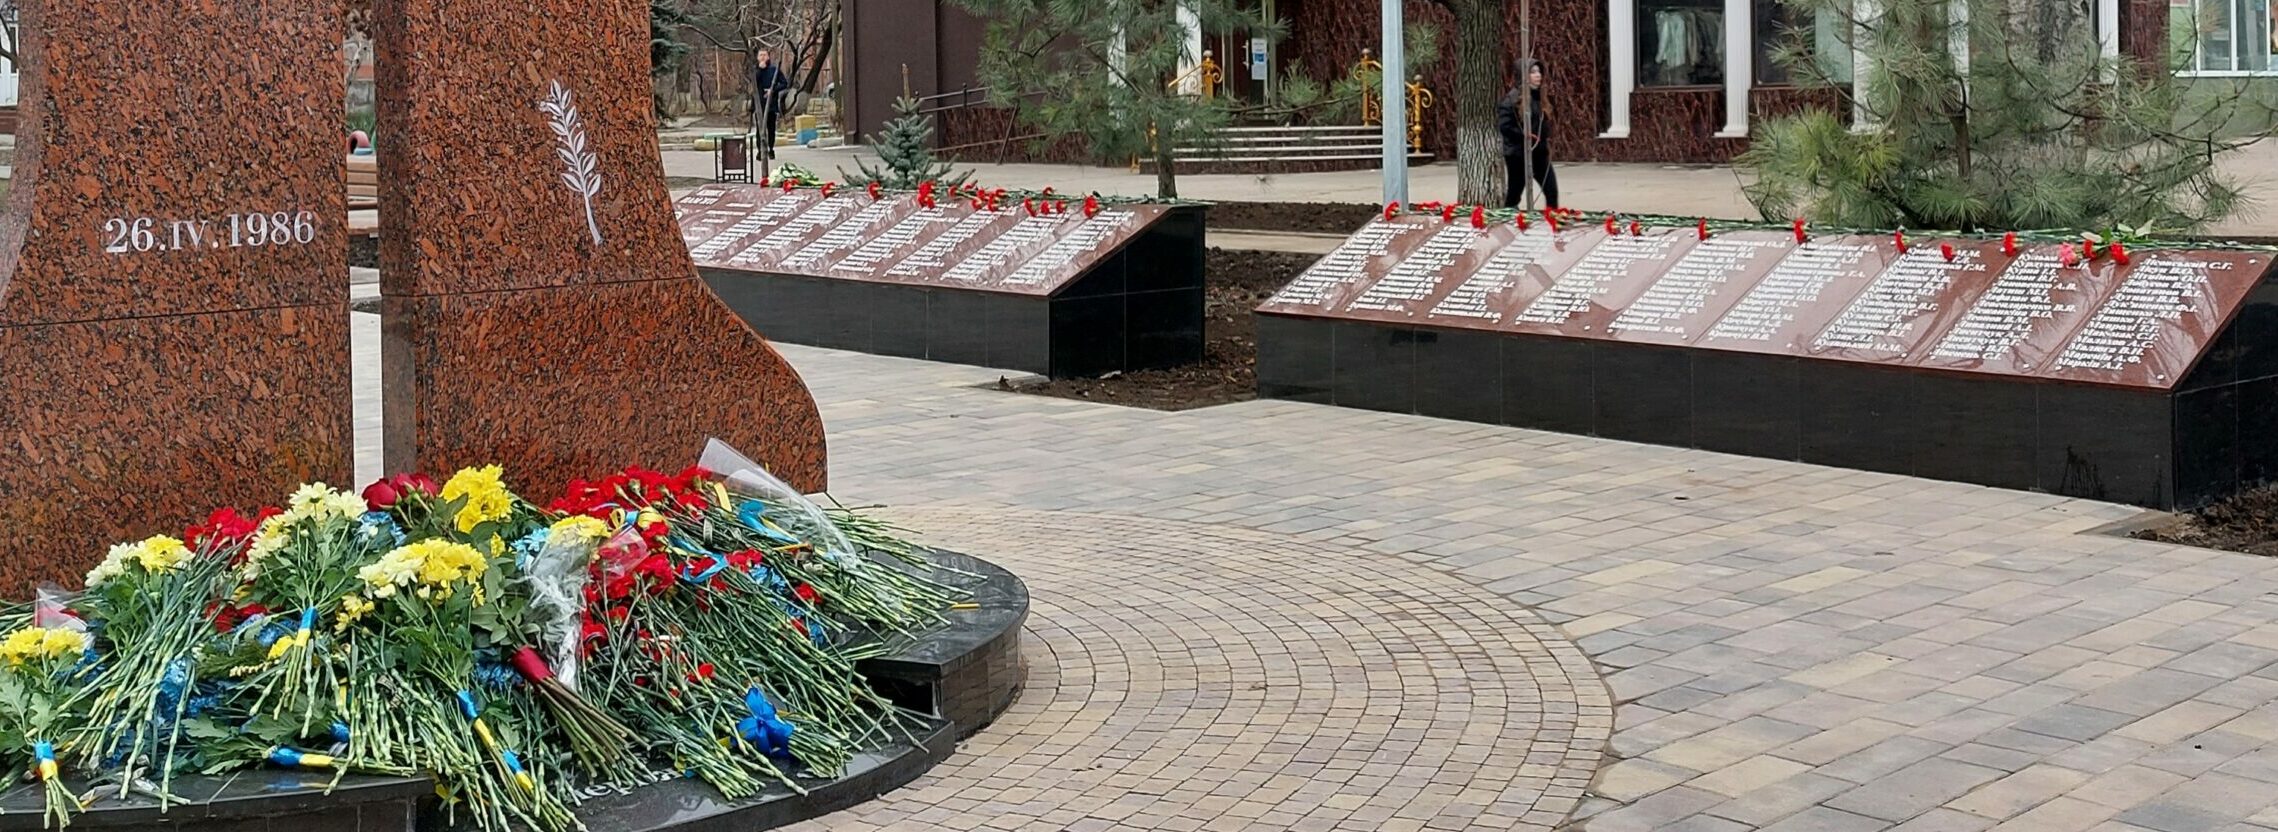 Маріуполь туристичне місто • Пам'ятний знак жертвам Чорнобильської трагедії та сквер героїв Чорнобиля